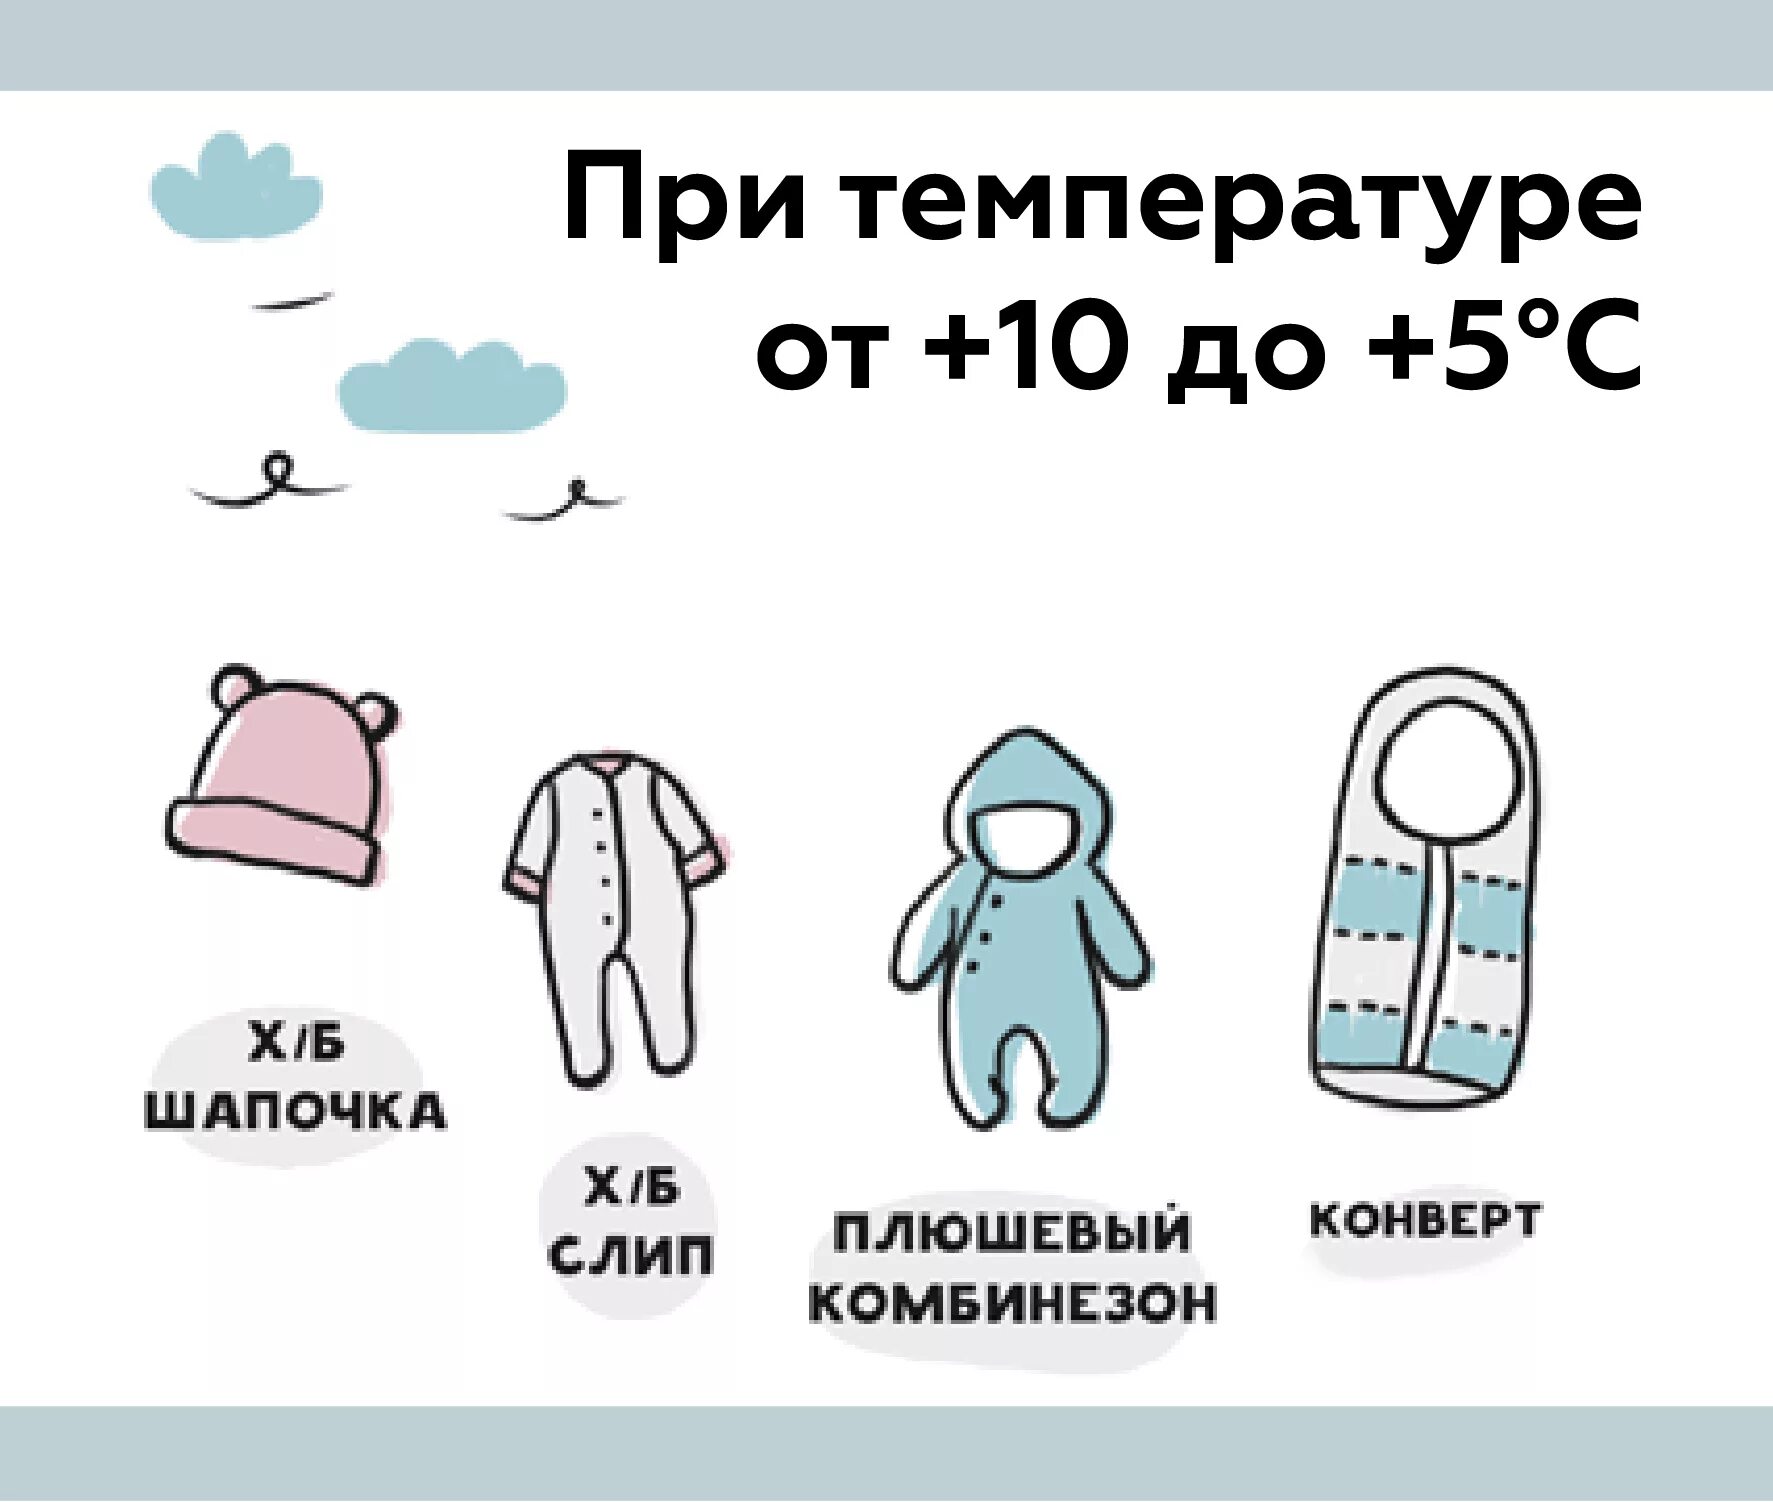 Как одевать малыша в 10. Как одеть грудничка на прогулку в +10. Как одевать грудничка на улицу в +10. Как одевать малыша в 10 градусов тепла. Как одевать грудничка в +25 на прогулку.